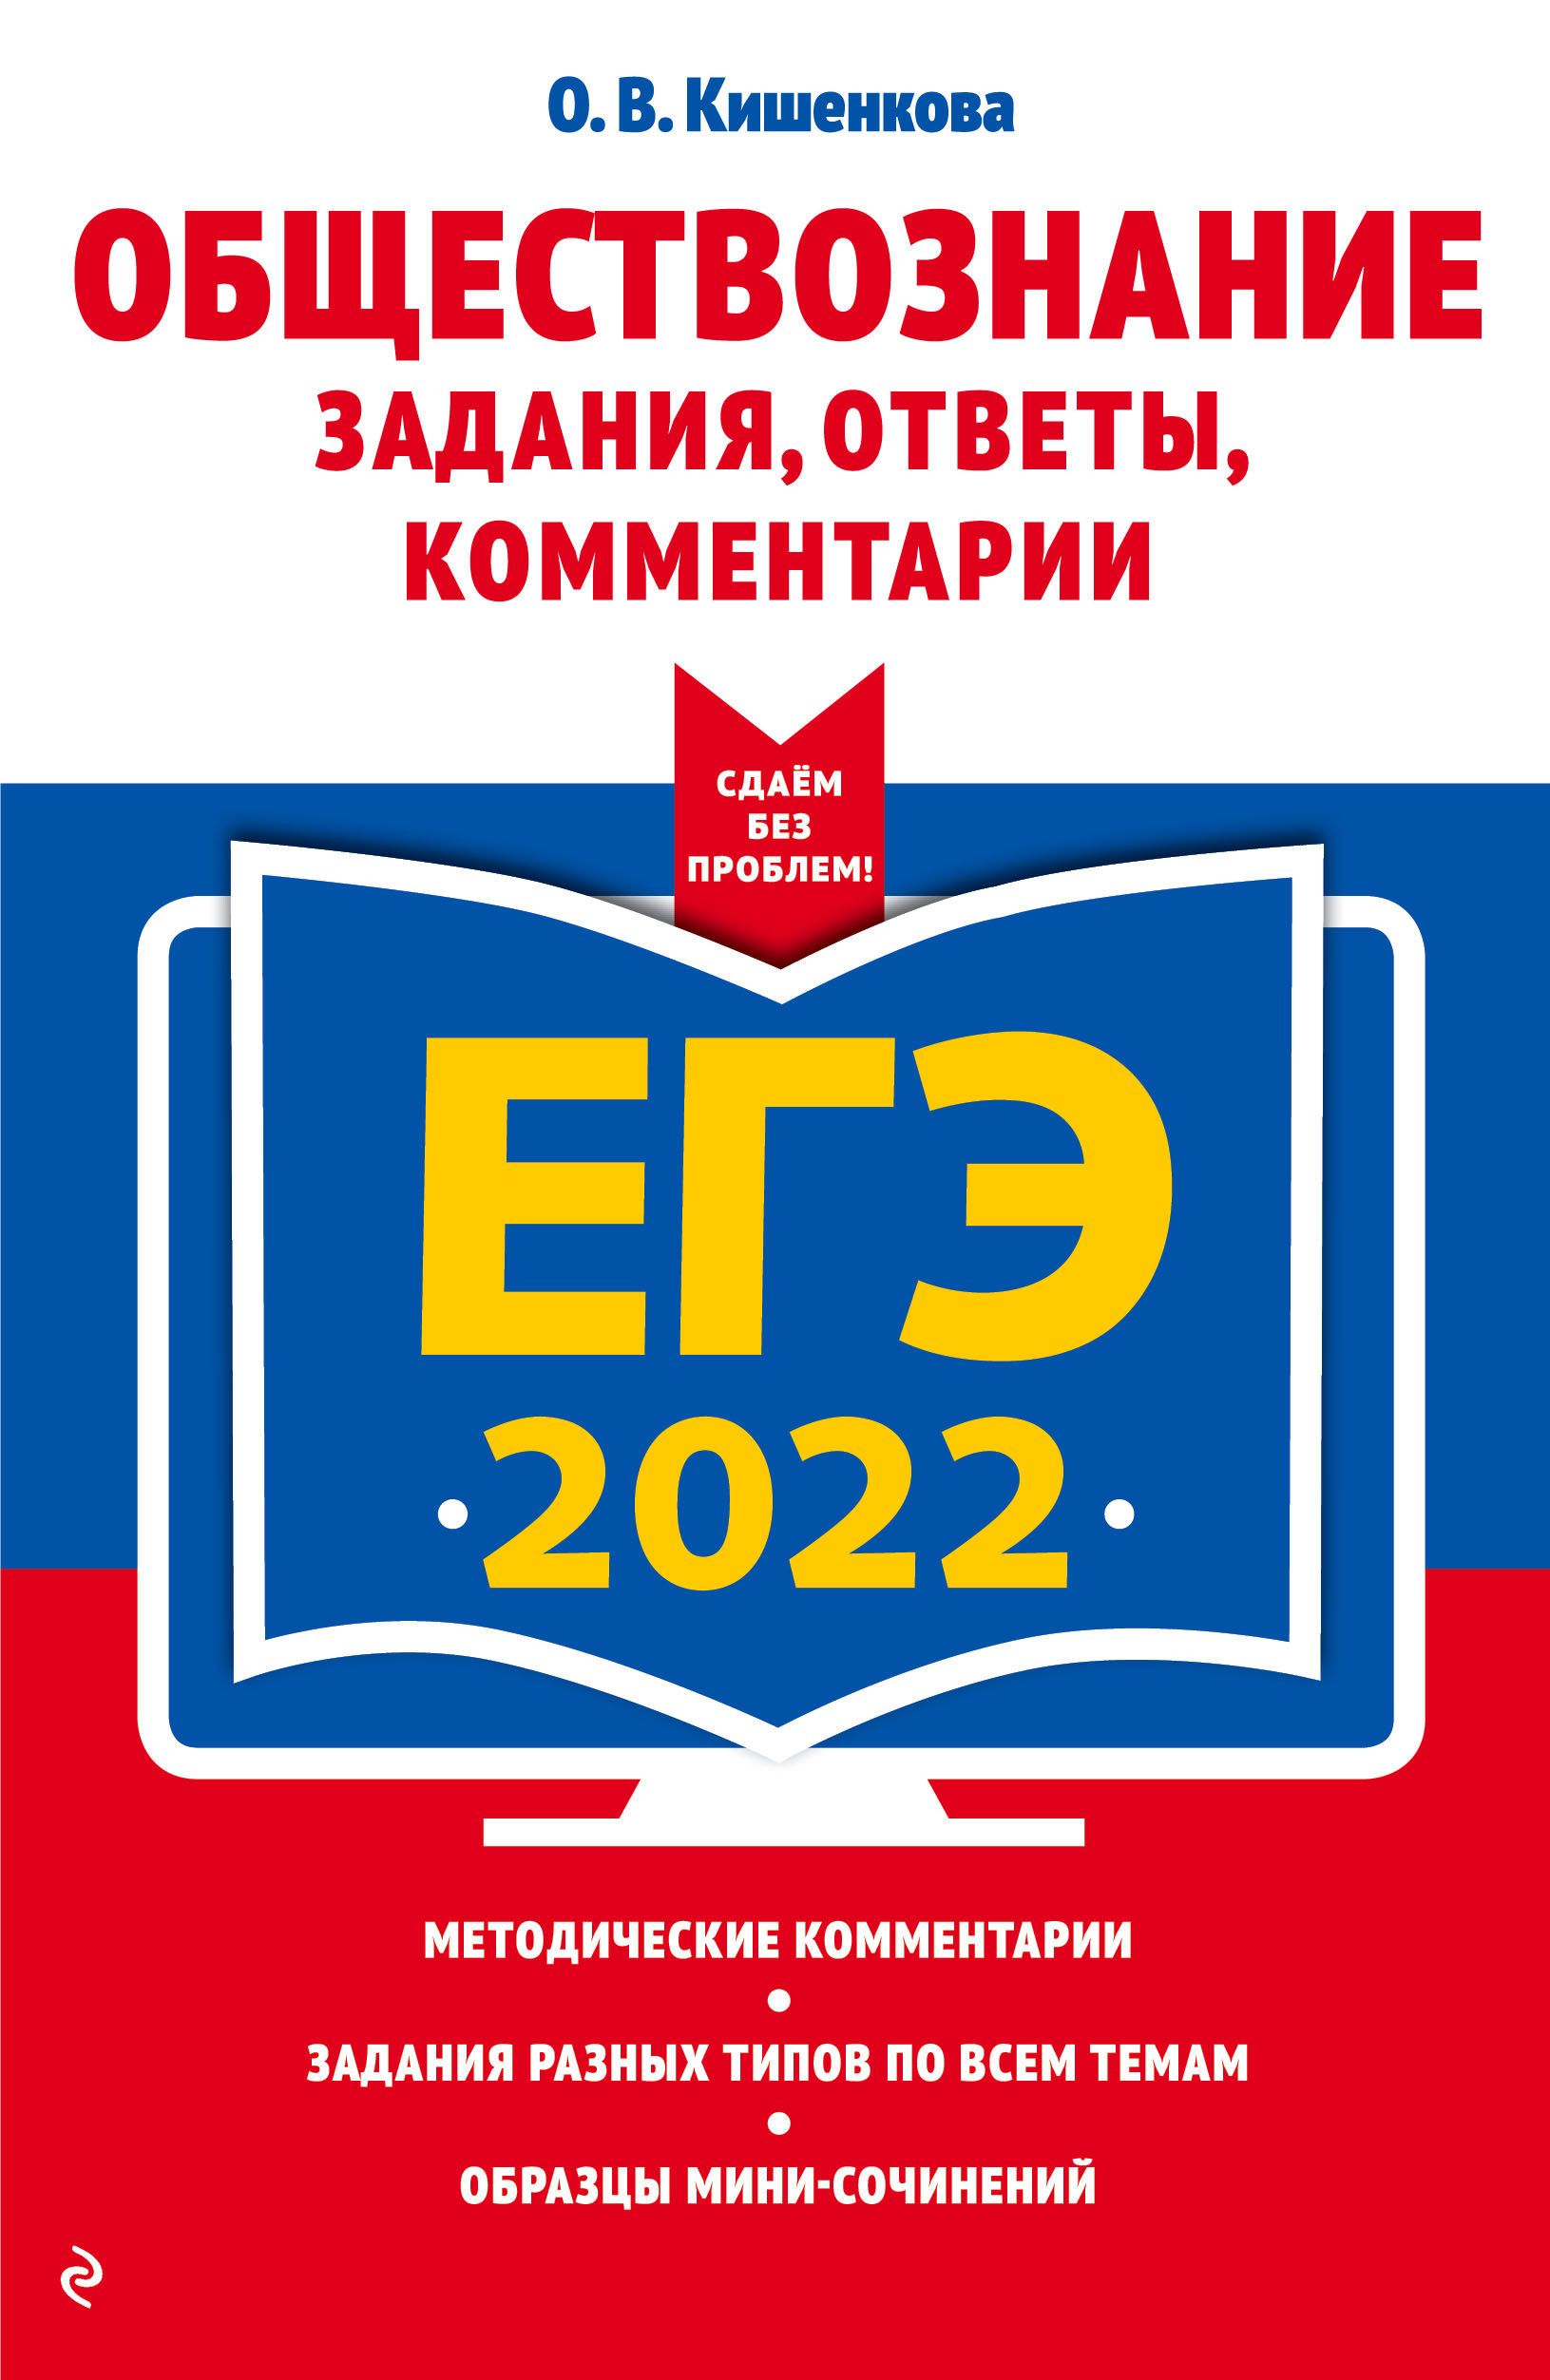  .. -2022. . , ,  